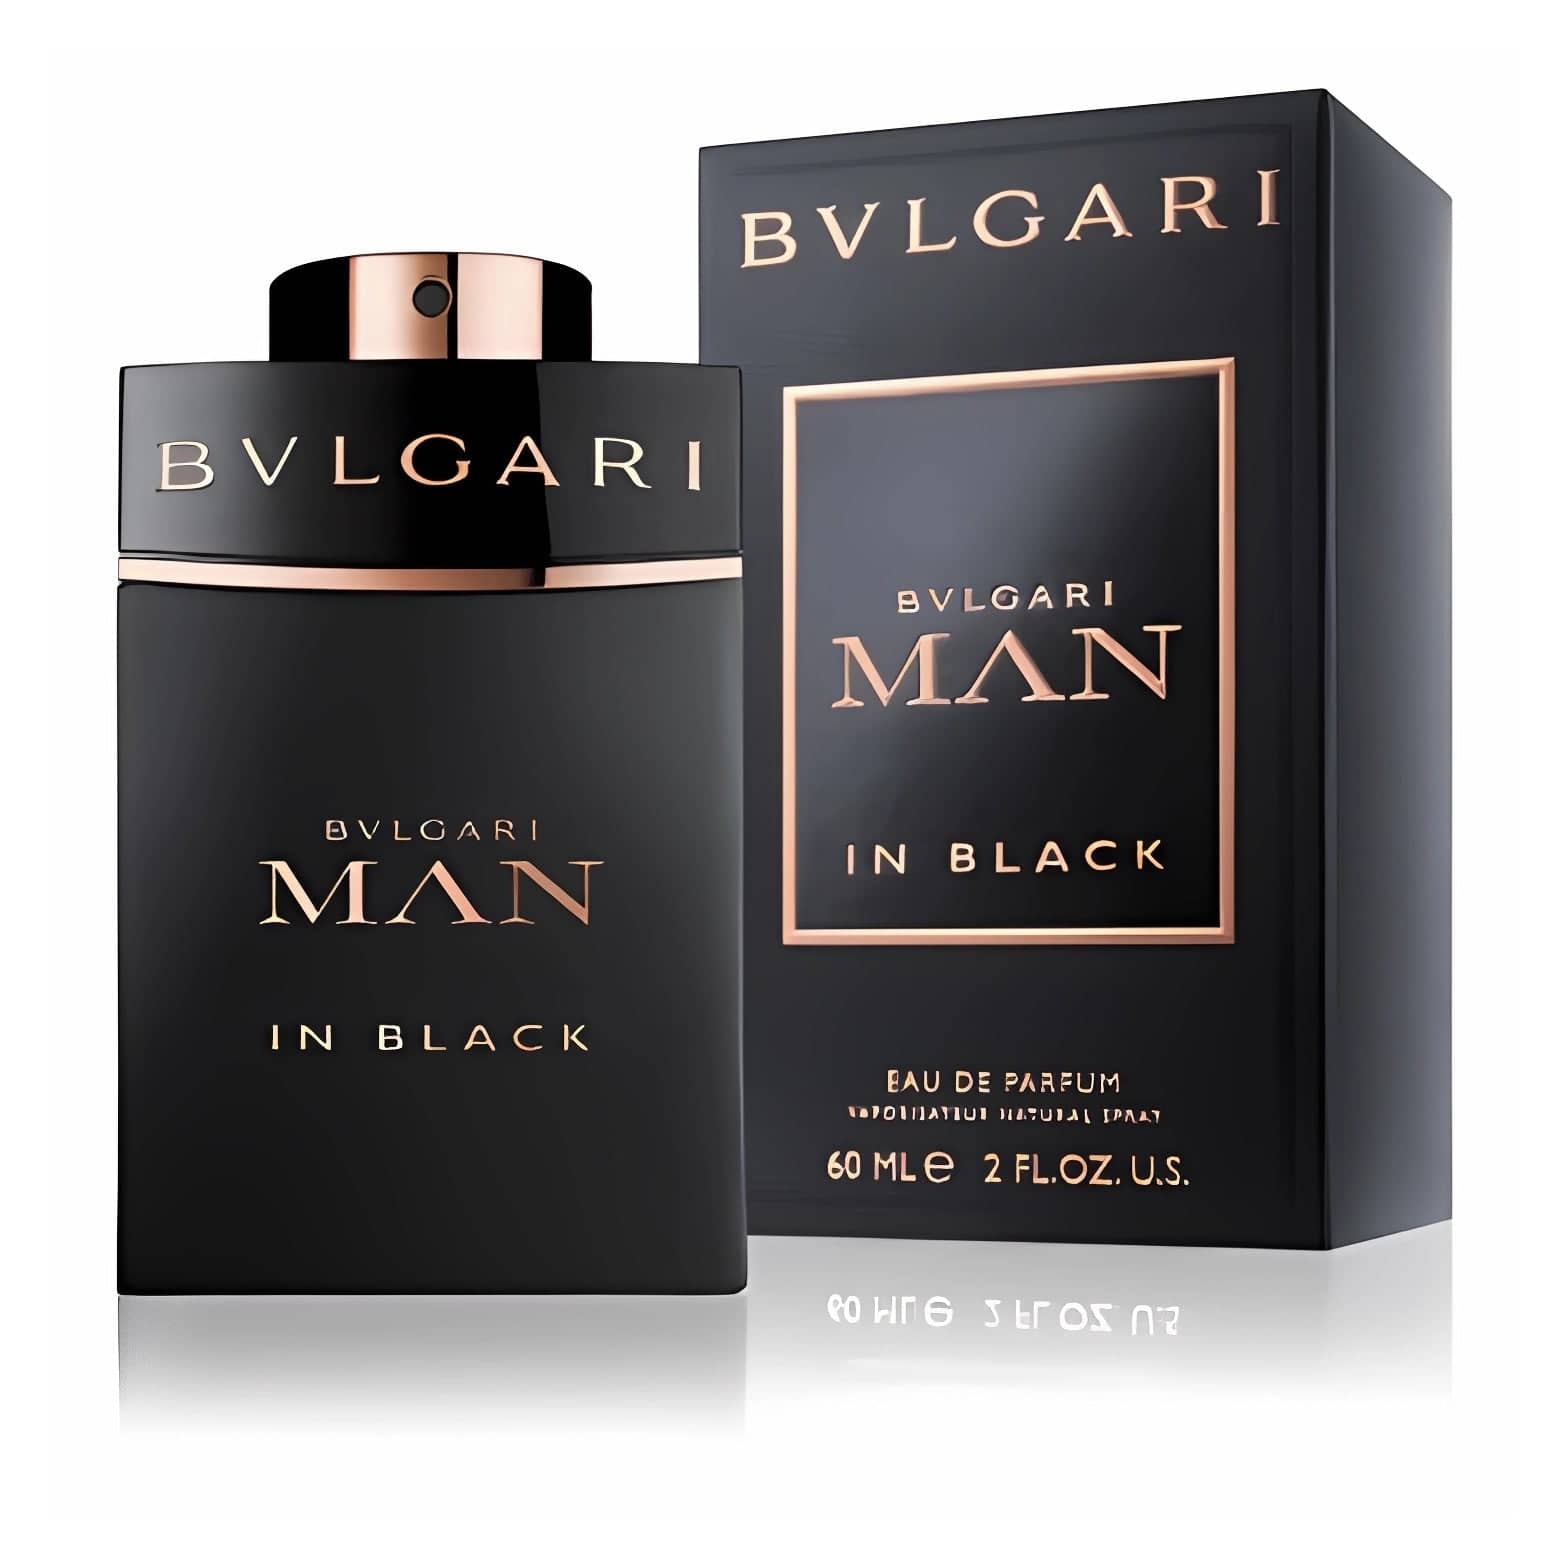 Man In Black Eau de Parfum Eau de Parfum BVLGARI   